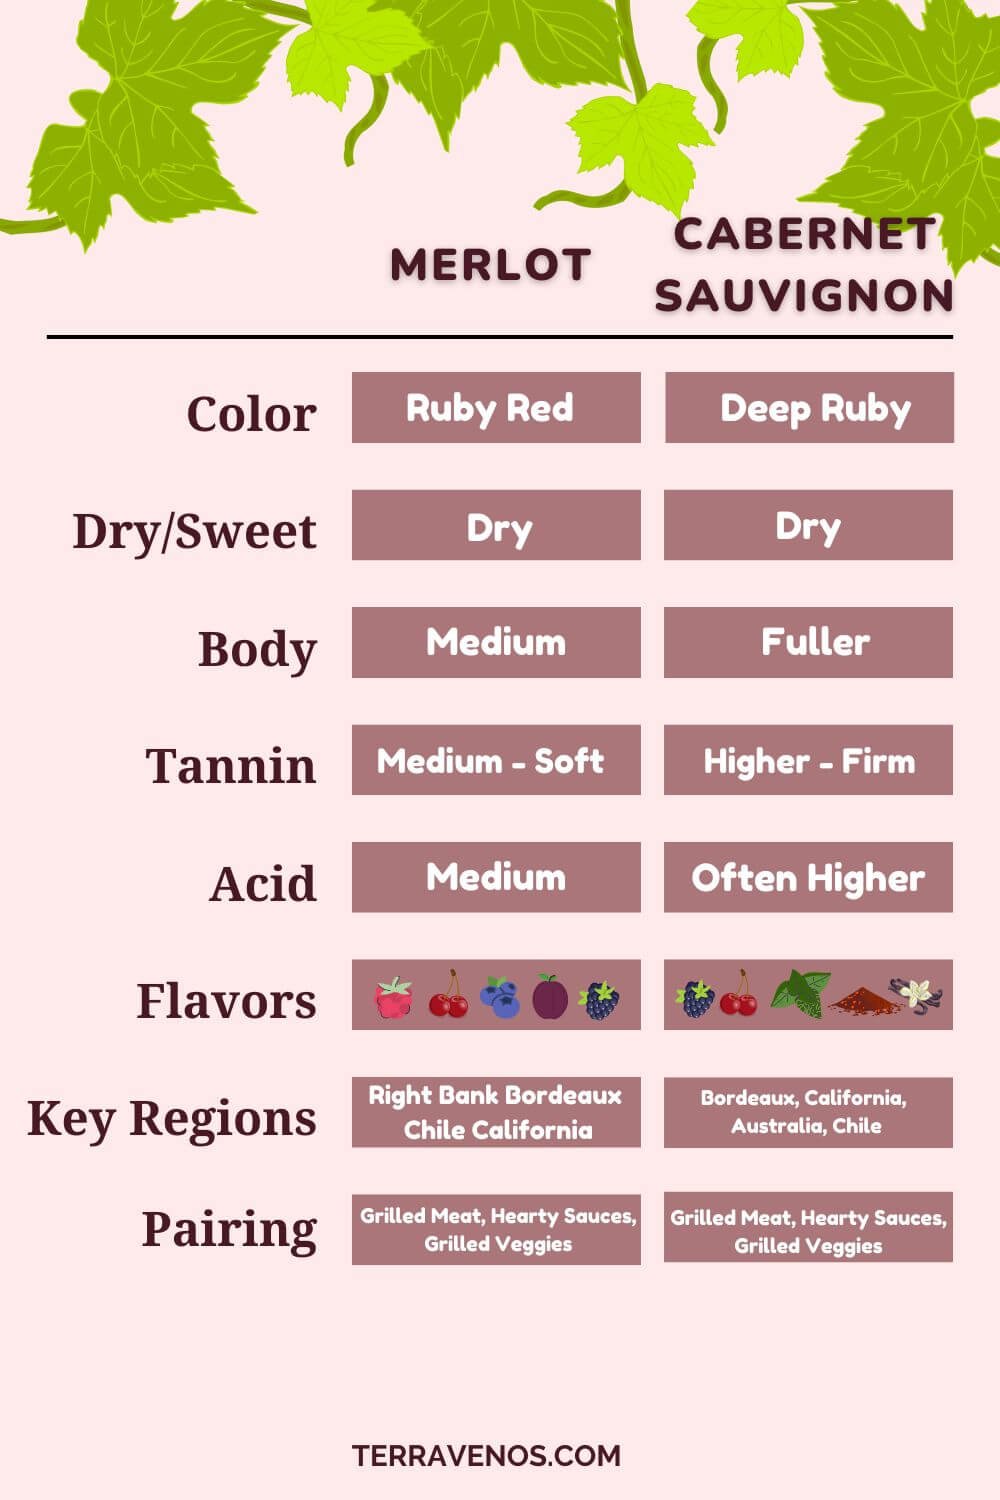 merlot vs cabernet sauvignon -side-by-side-infographic comparison